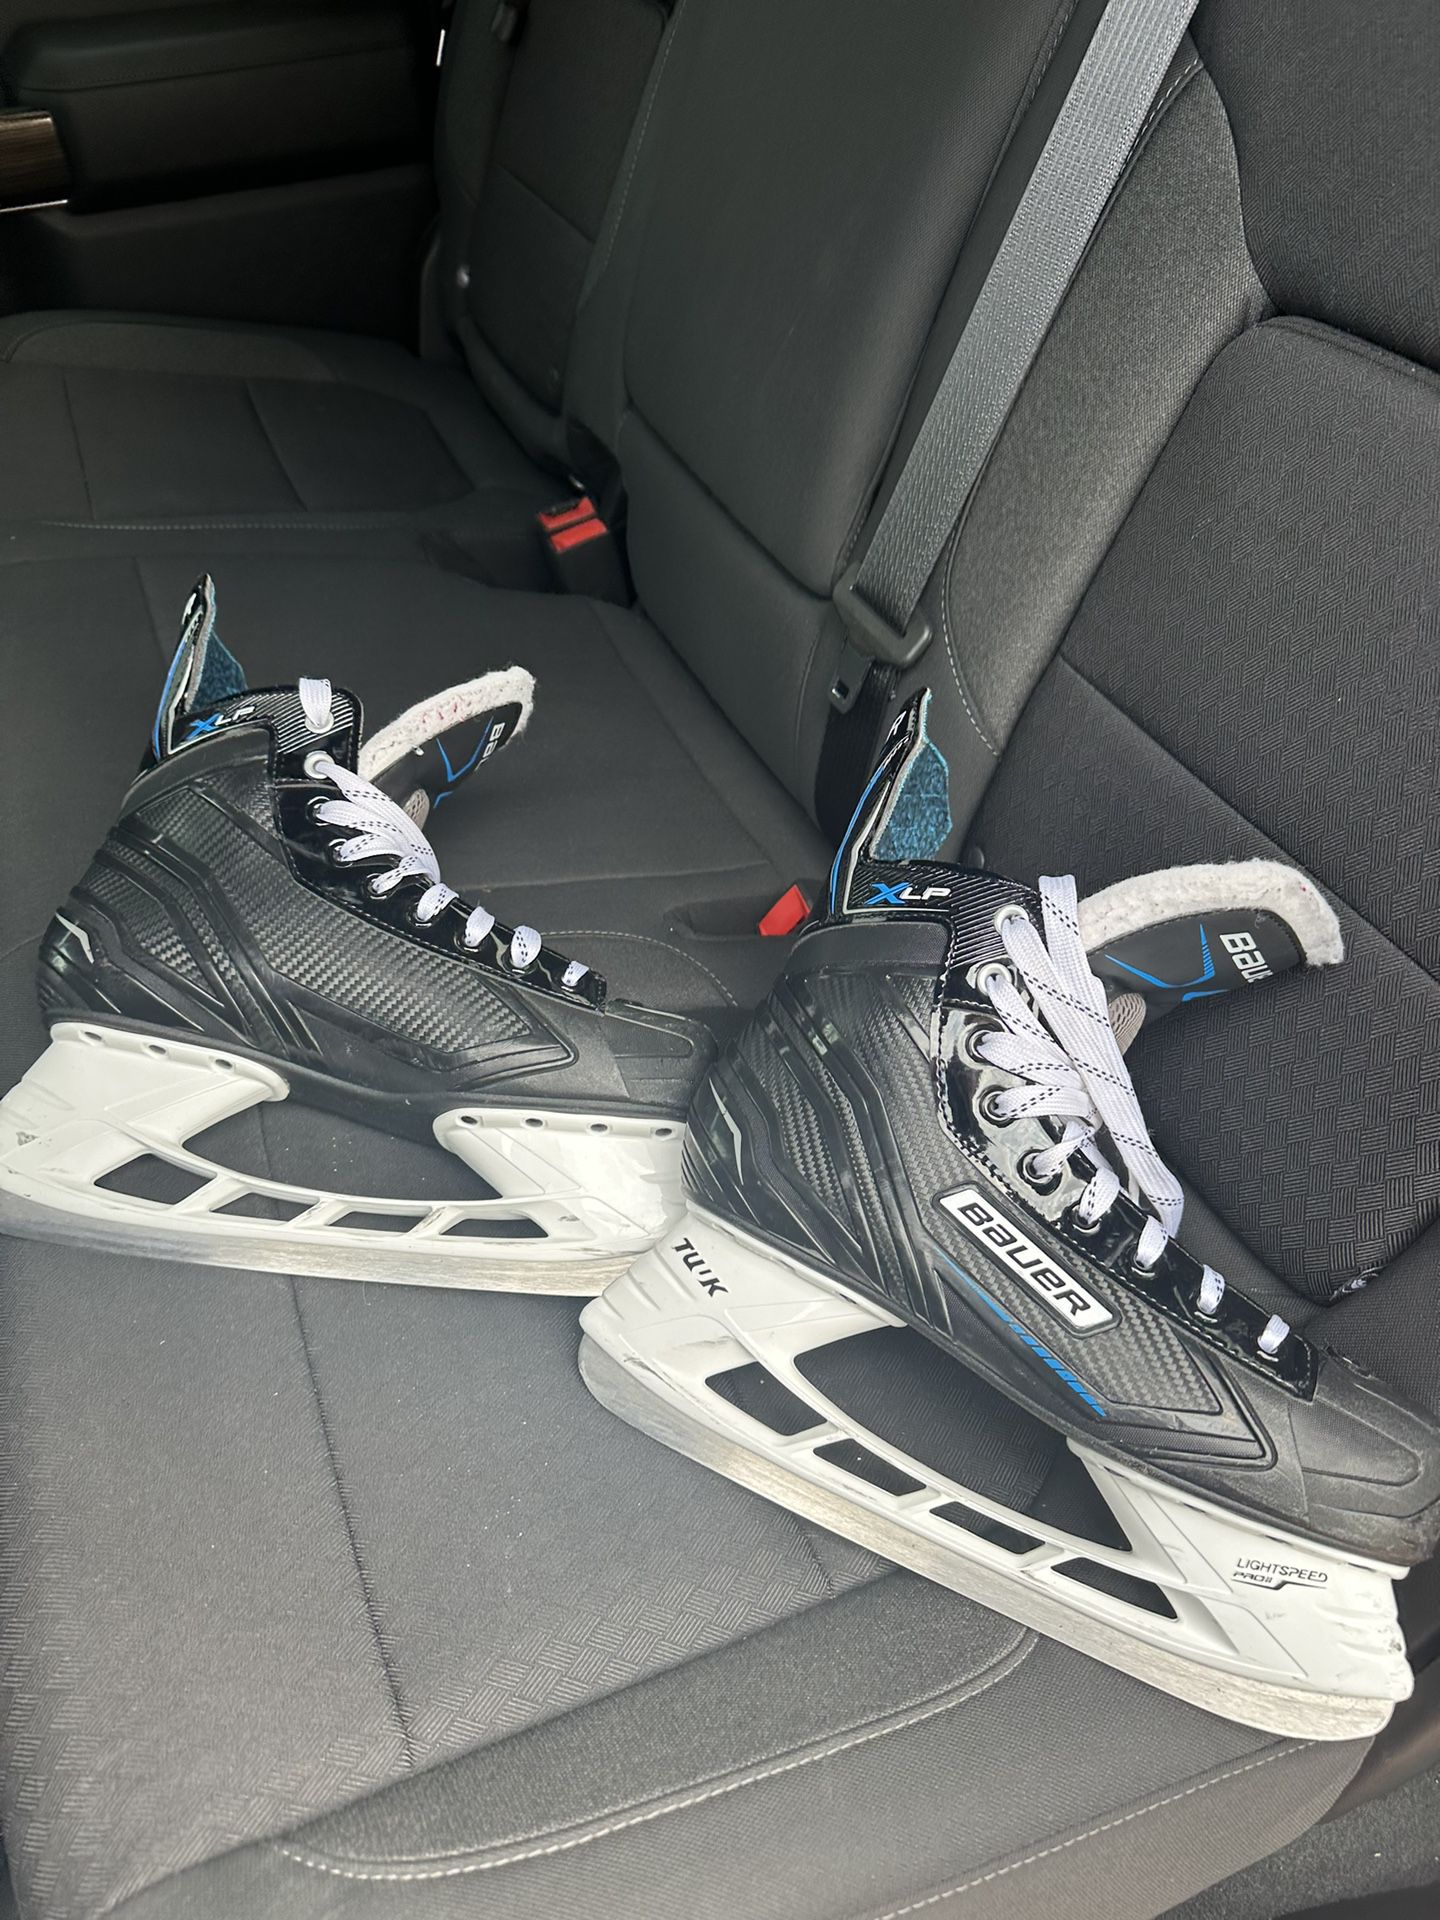 Bauer Ice skates